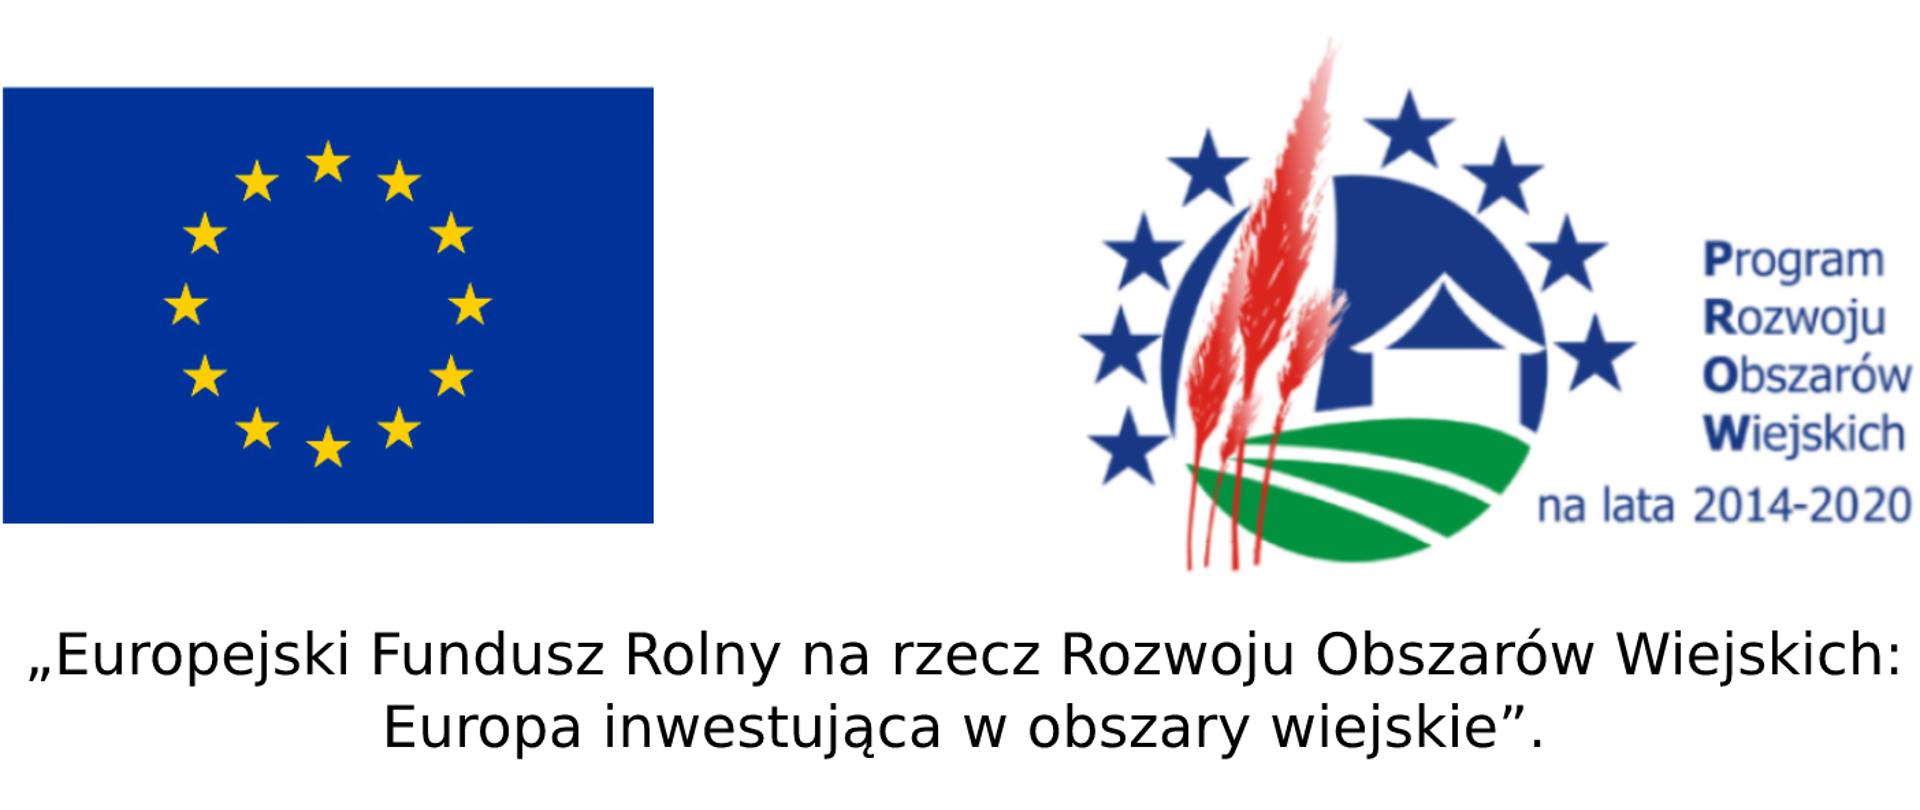 Flaga Unii Europejskiej oraz logo Programu Rozwoju Obszarów Wiejskich na lata 2014-2020. Pod logotypami czarnymi literami napisana nazwa funduszu.